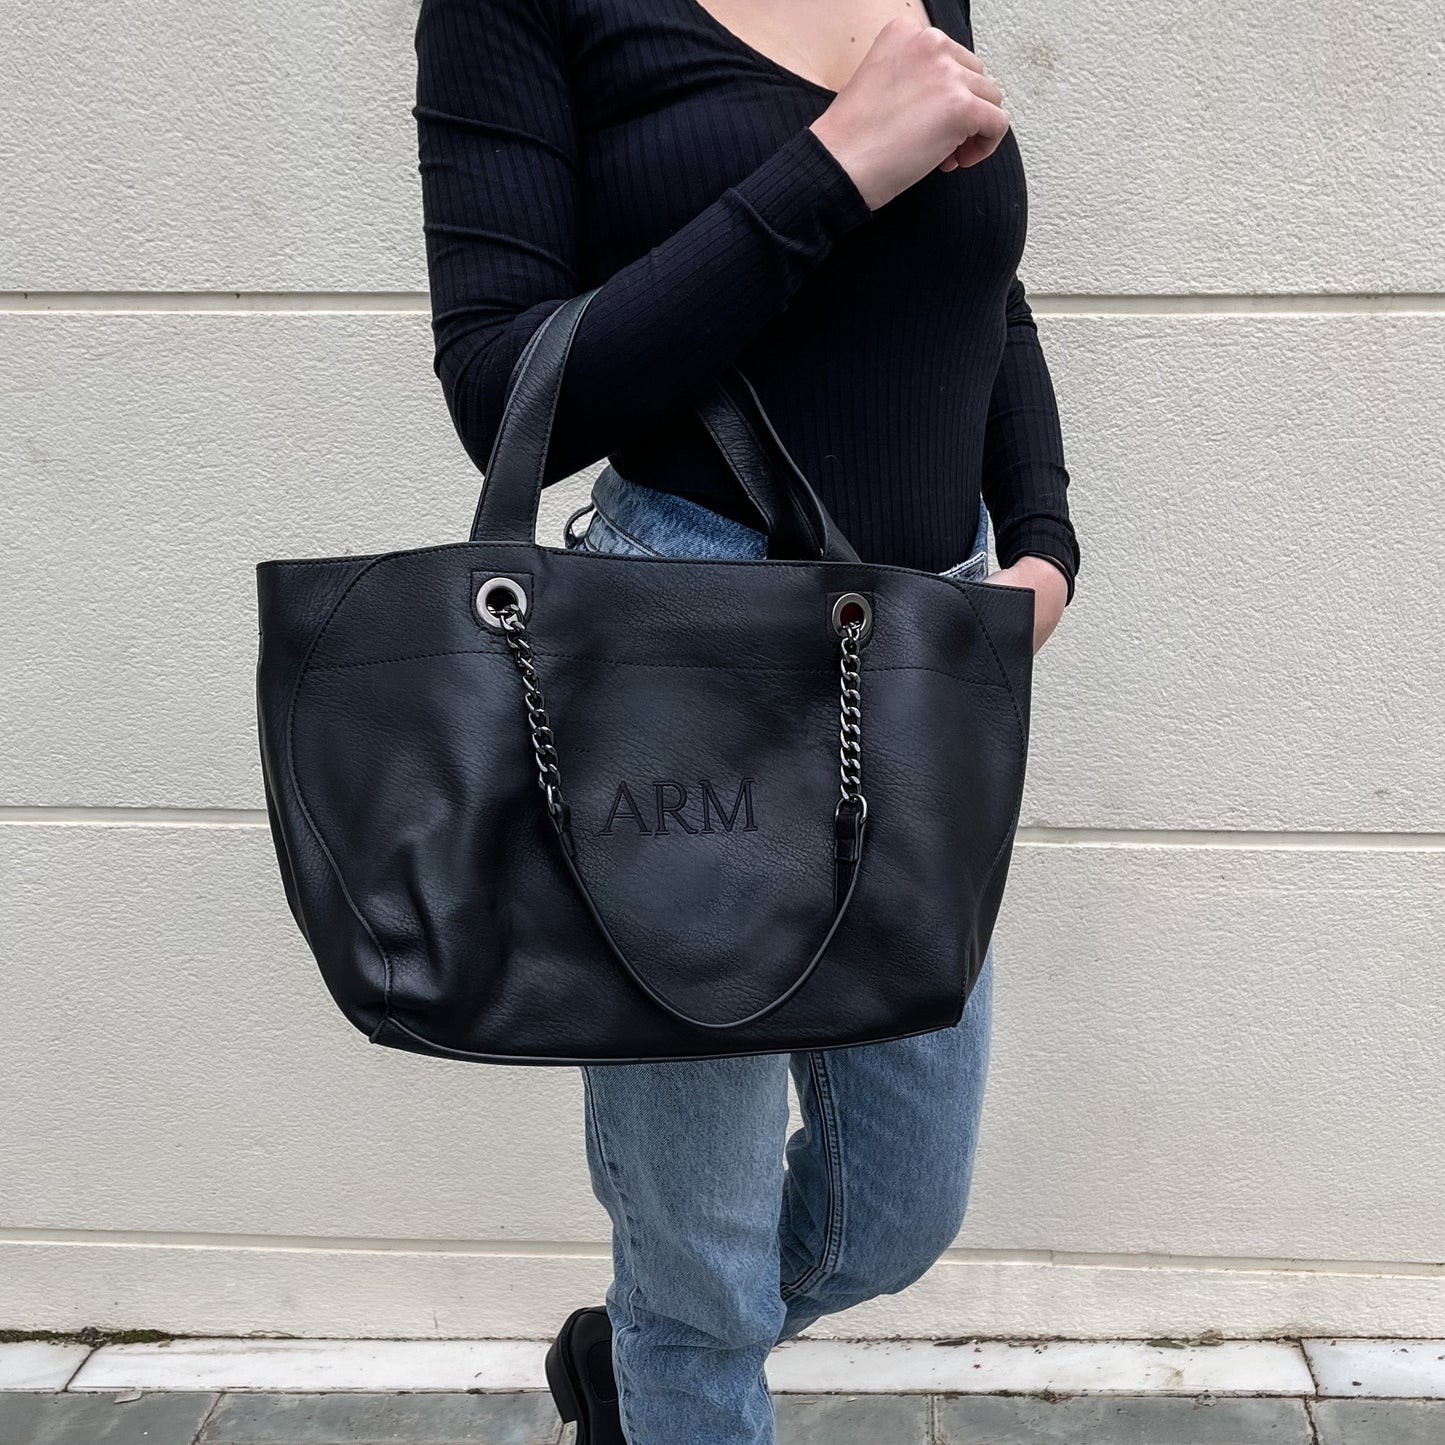 Handbag cadenas personalizado negro con iniciales bordadas